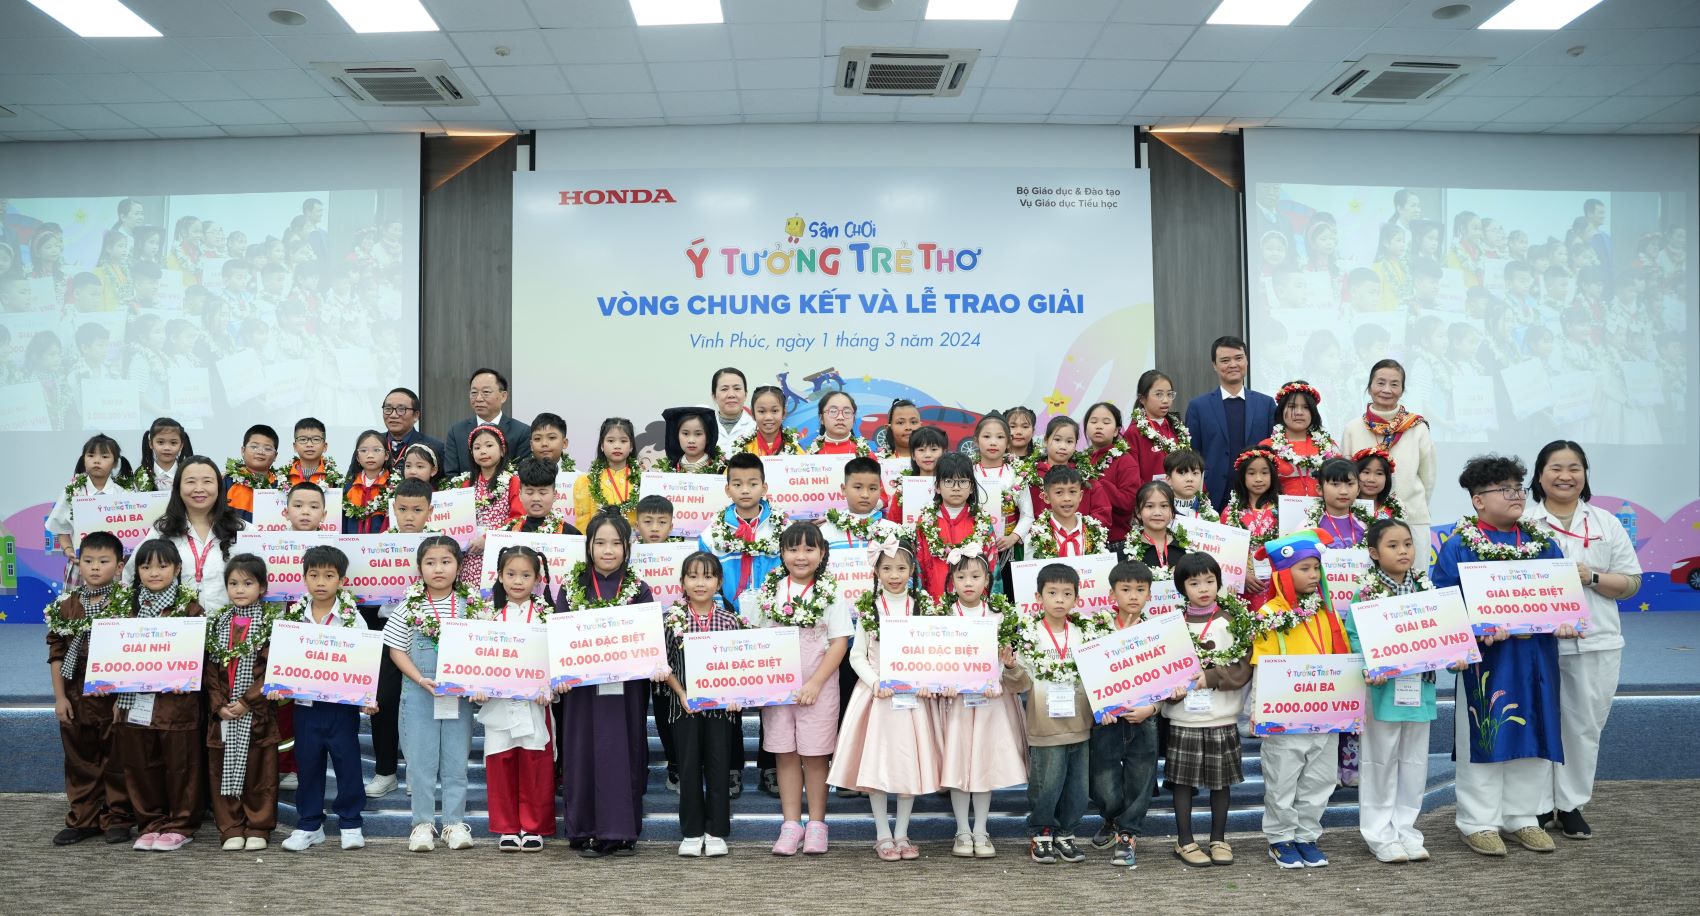 Honda Việt Nam tổ chức vòng Chung kết và trao giải “Sân chơi ý tưởng trẻ thơ”